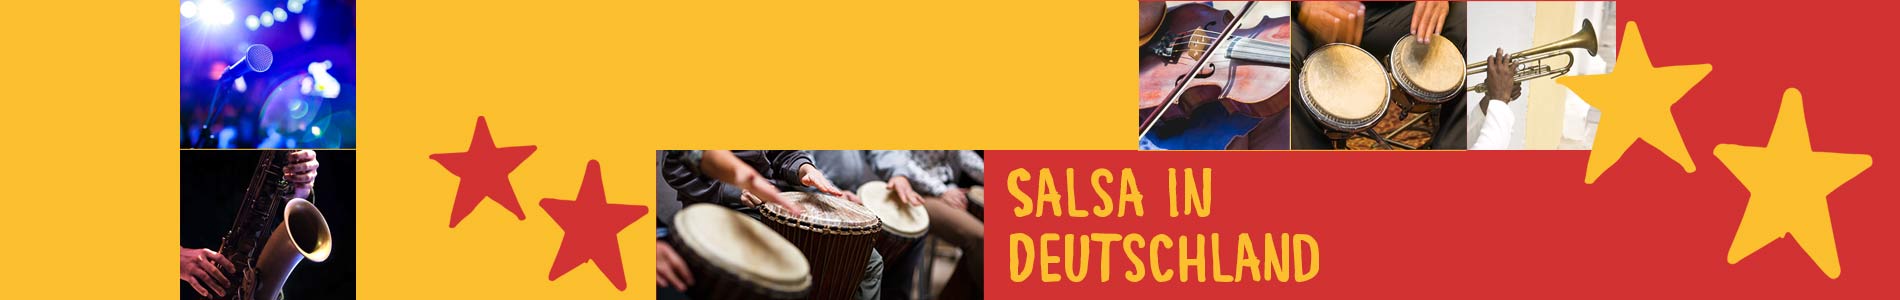 Salsa in Burg auf Fehmarn – Salsa lernen und tanzen, Tanzkurse, Partys, Veranstaltungen